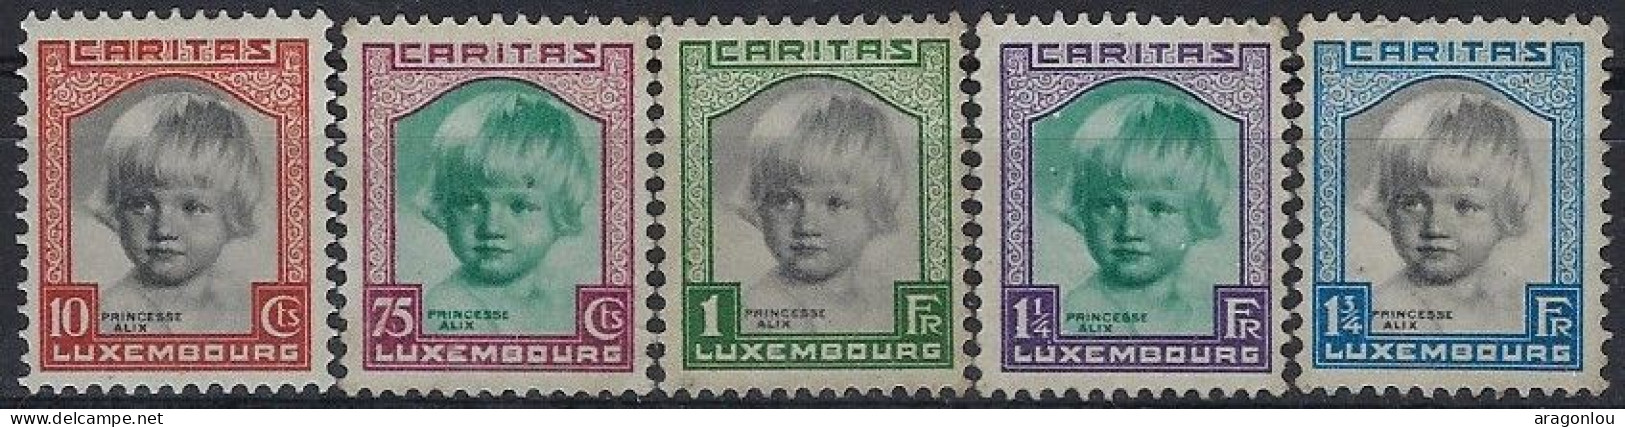 Luxembourg - Luxemburg - Timbres -   1931   Caritas Princesse Alix   Série   MH* - Oblitérés